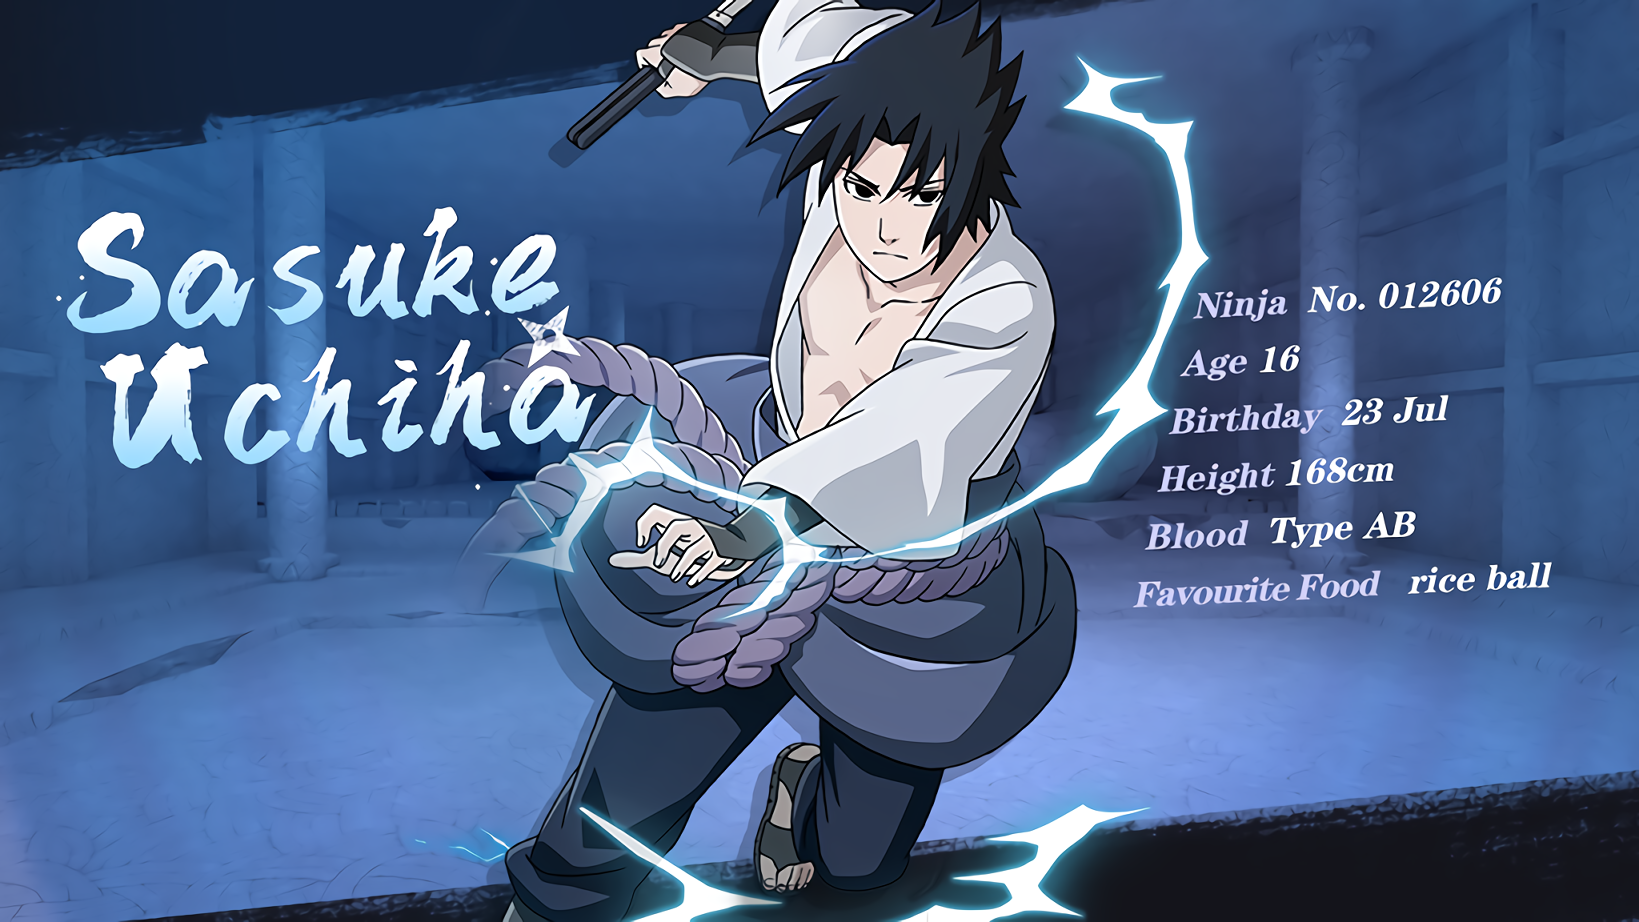 Naruto Shippuden: Naruto vs Sasuke Wallpaper 3 by Maxiuchiha22 on